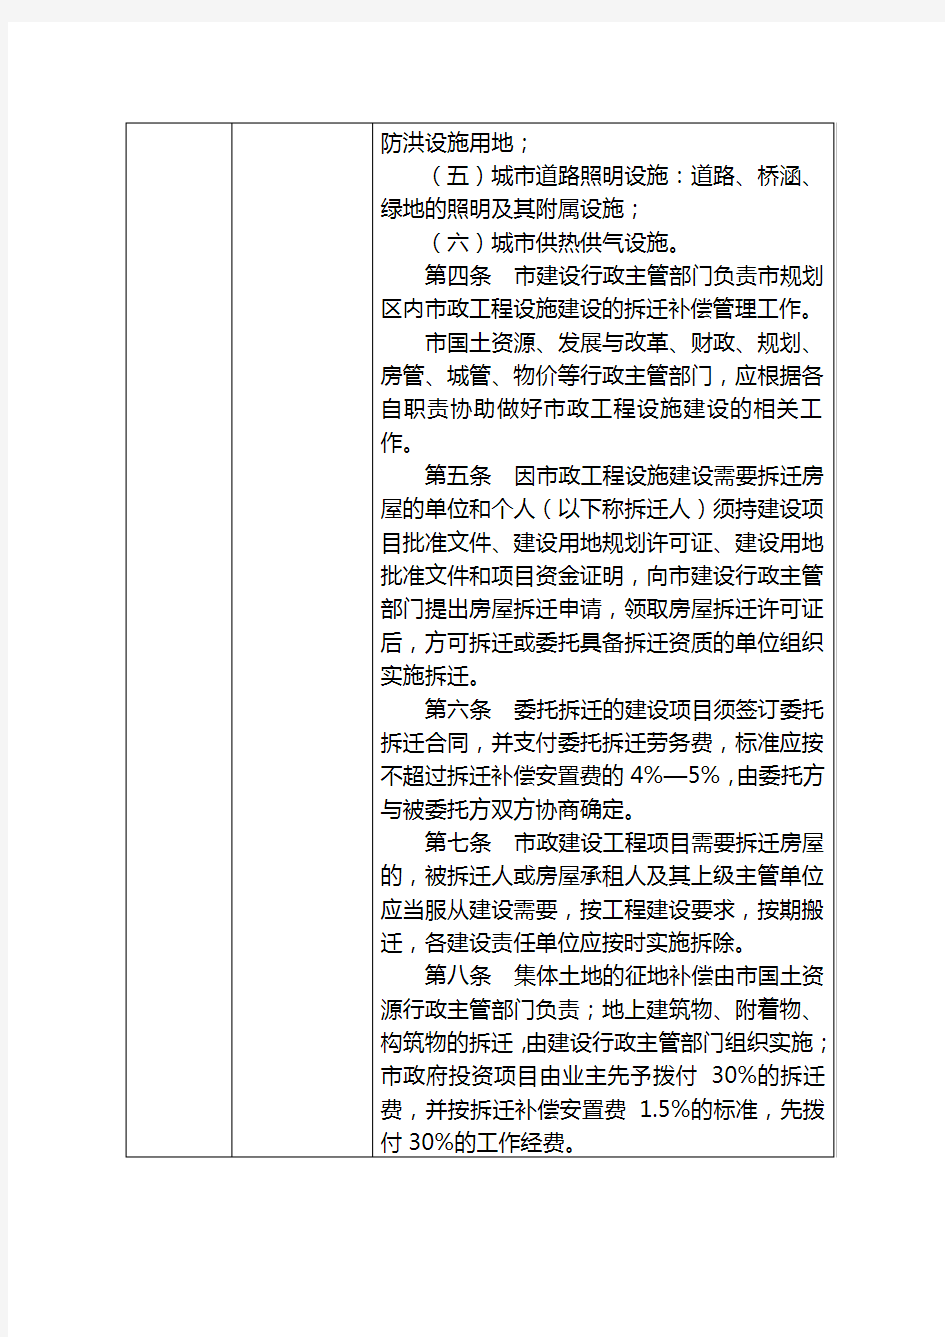 政府令[2006]第24号邢台市城市市政工作设施建设拆迁补偿暂行规定